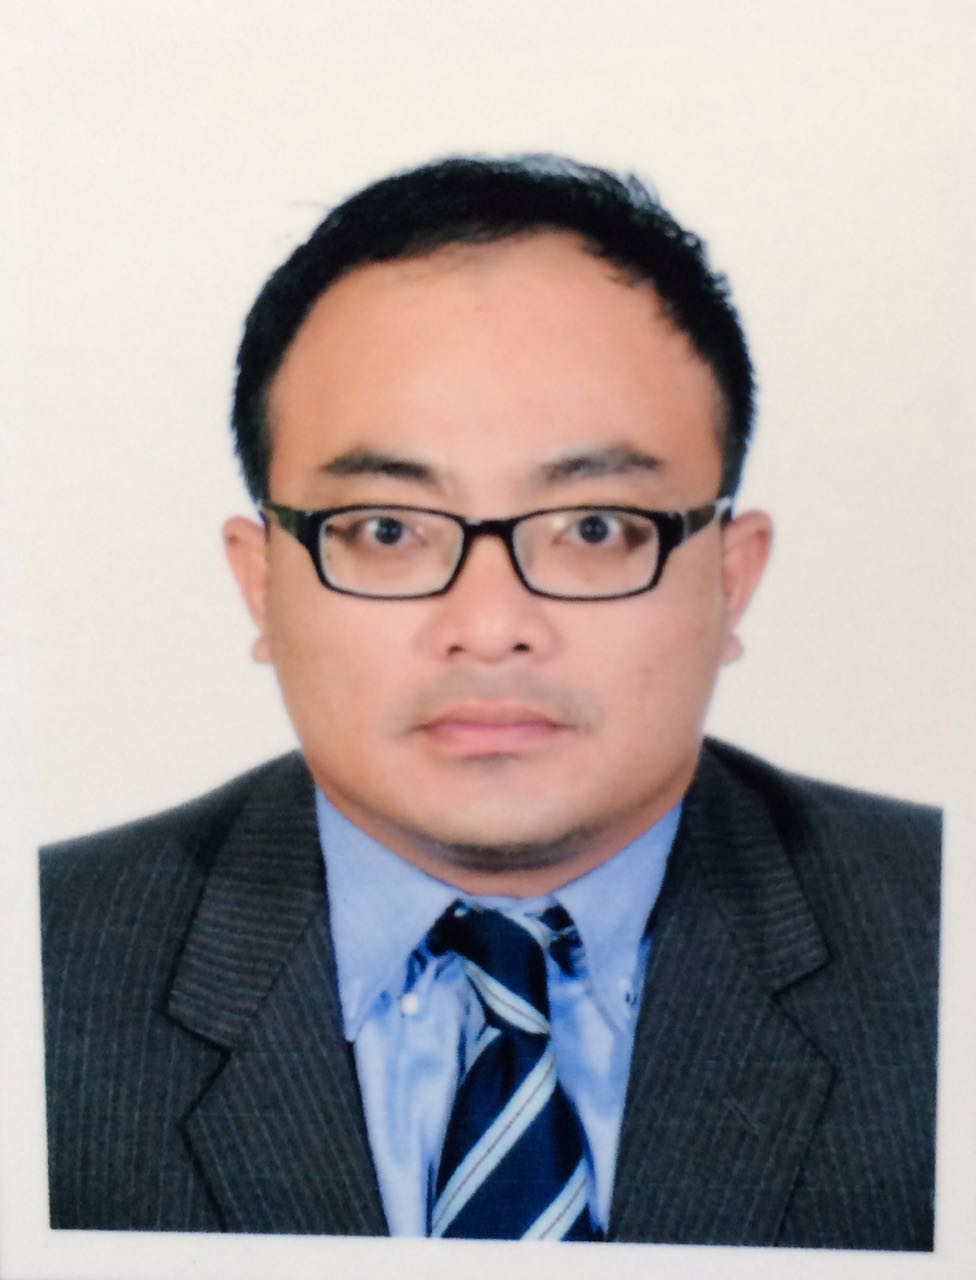 Dr Asnor Muizan bin Hj. Ishak